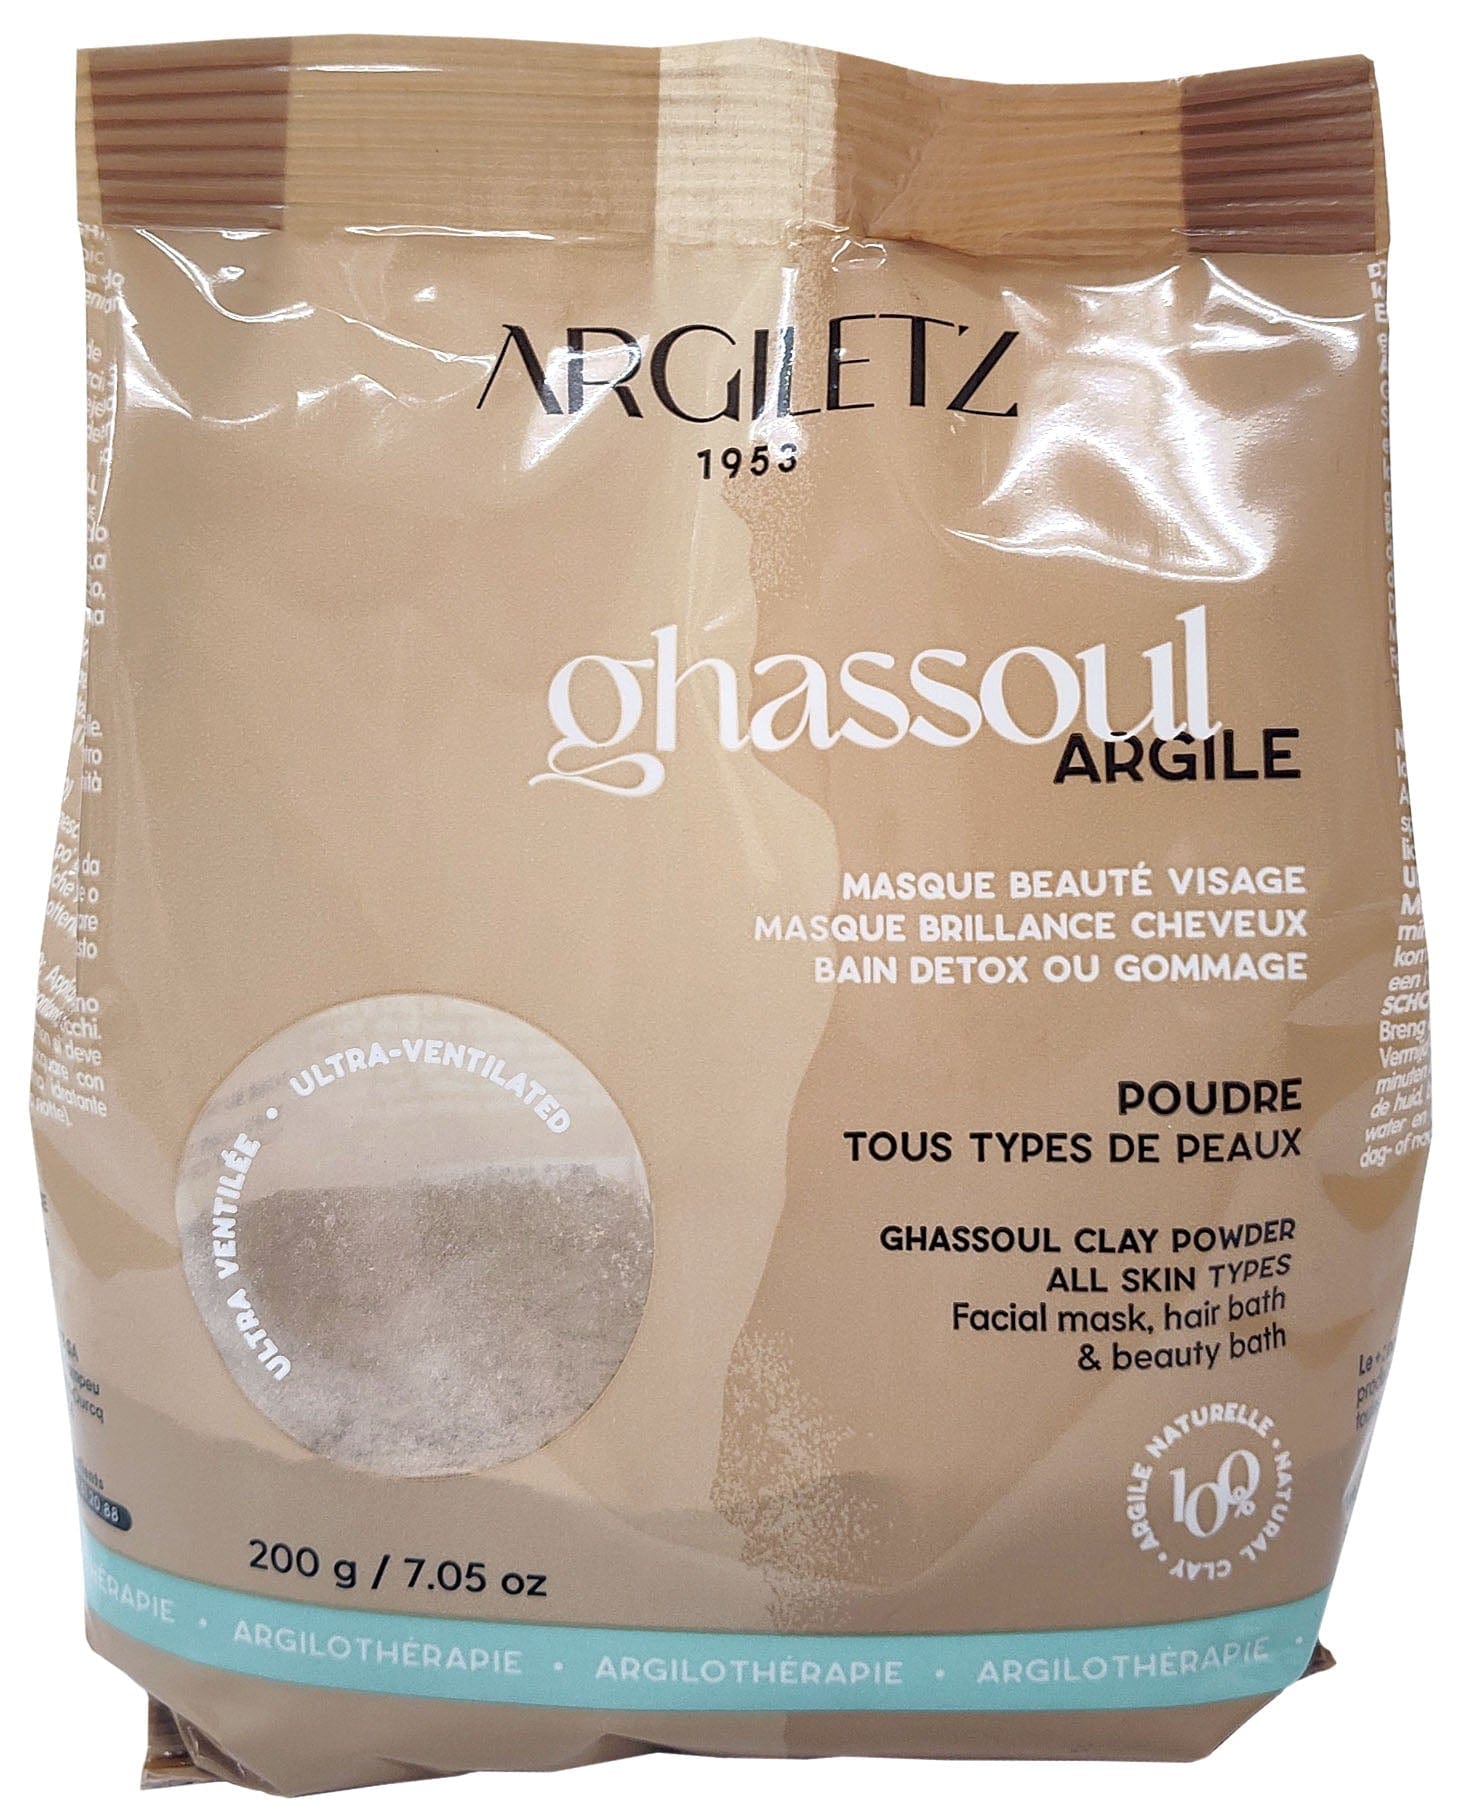 ARGILETZ Soins & beauté Argile ghassoul ultra-ventilé (tous types de peaux) 200g